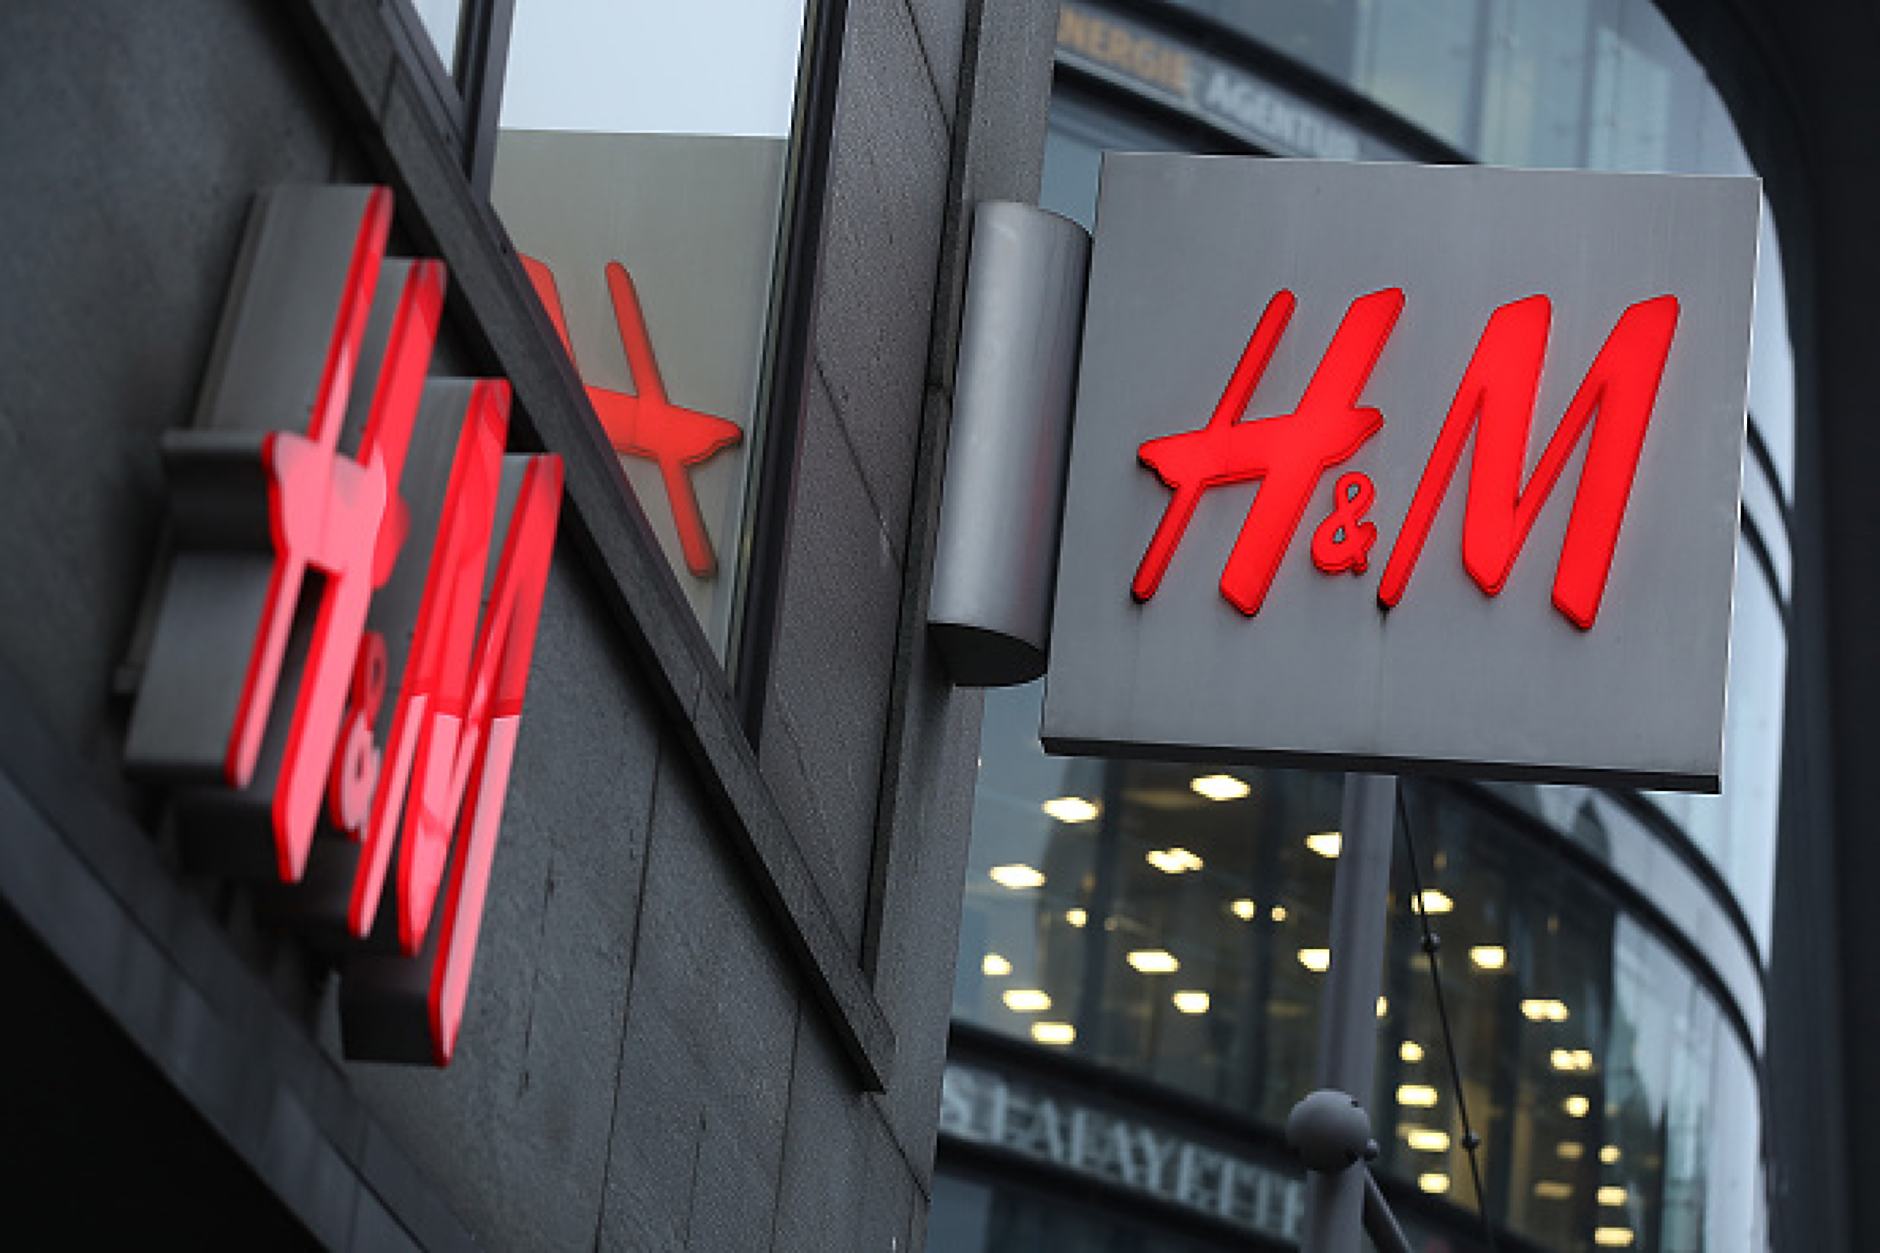 H&M затваря производството си Мианмар след сигналите за трудови злоупотреби